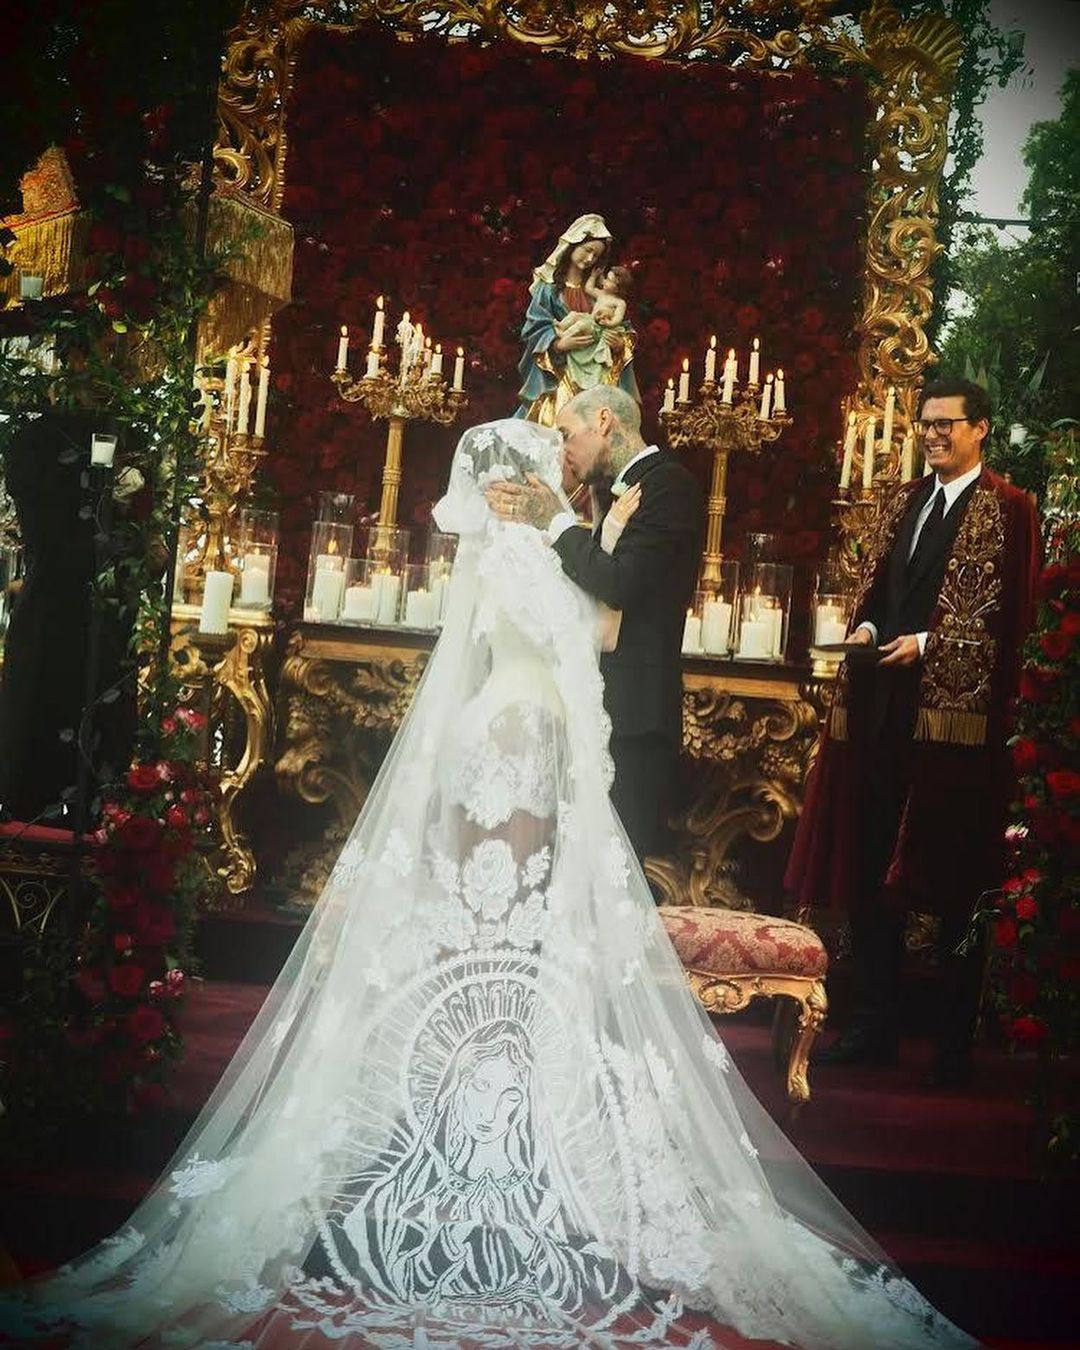 В сети появились первые фото свадьбы Кортни Кардашьян в Италии